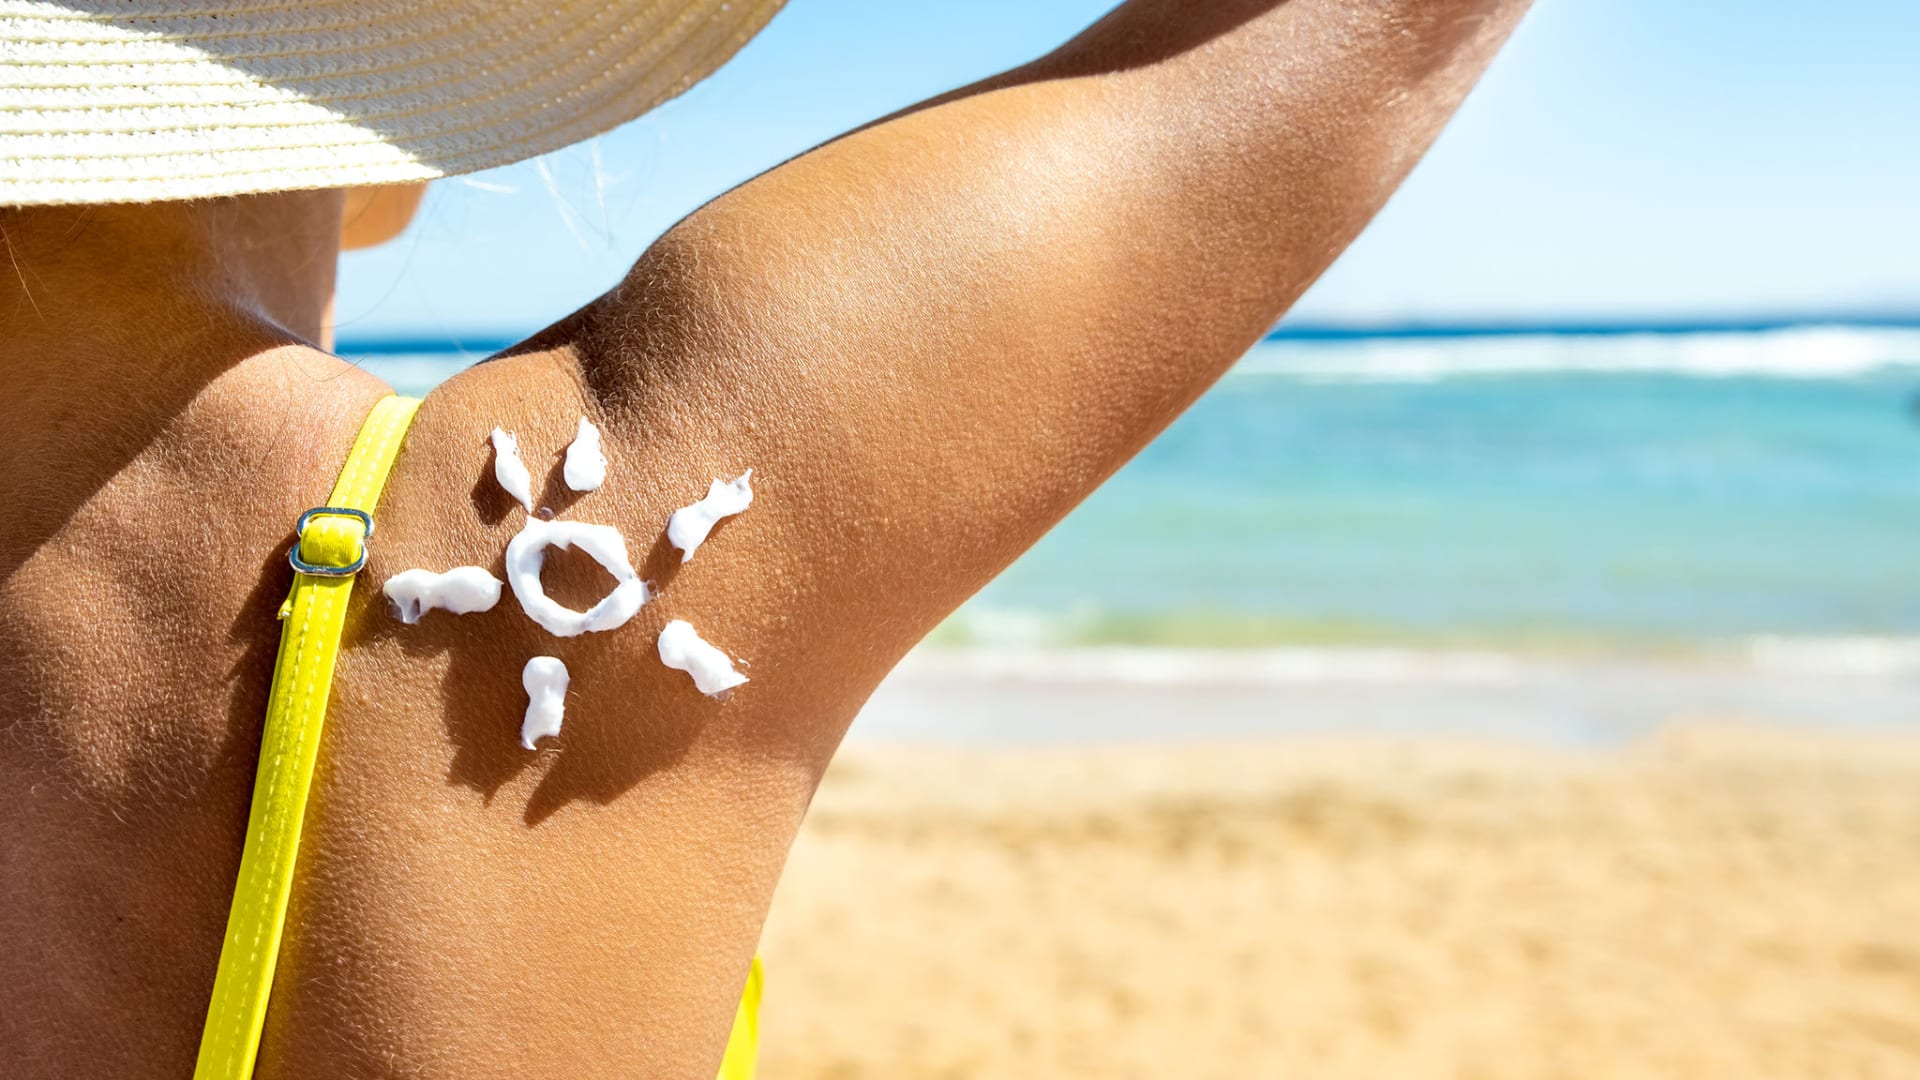 Der Sommer bringt Sonne, aber auch Risiken für unsere Haut mit sich. Erfahren Sie, wie Sie Ihre Haut diesen Sommer effektiv vor UV-Strahlen schützen können.